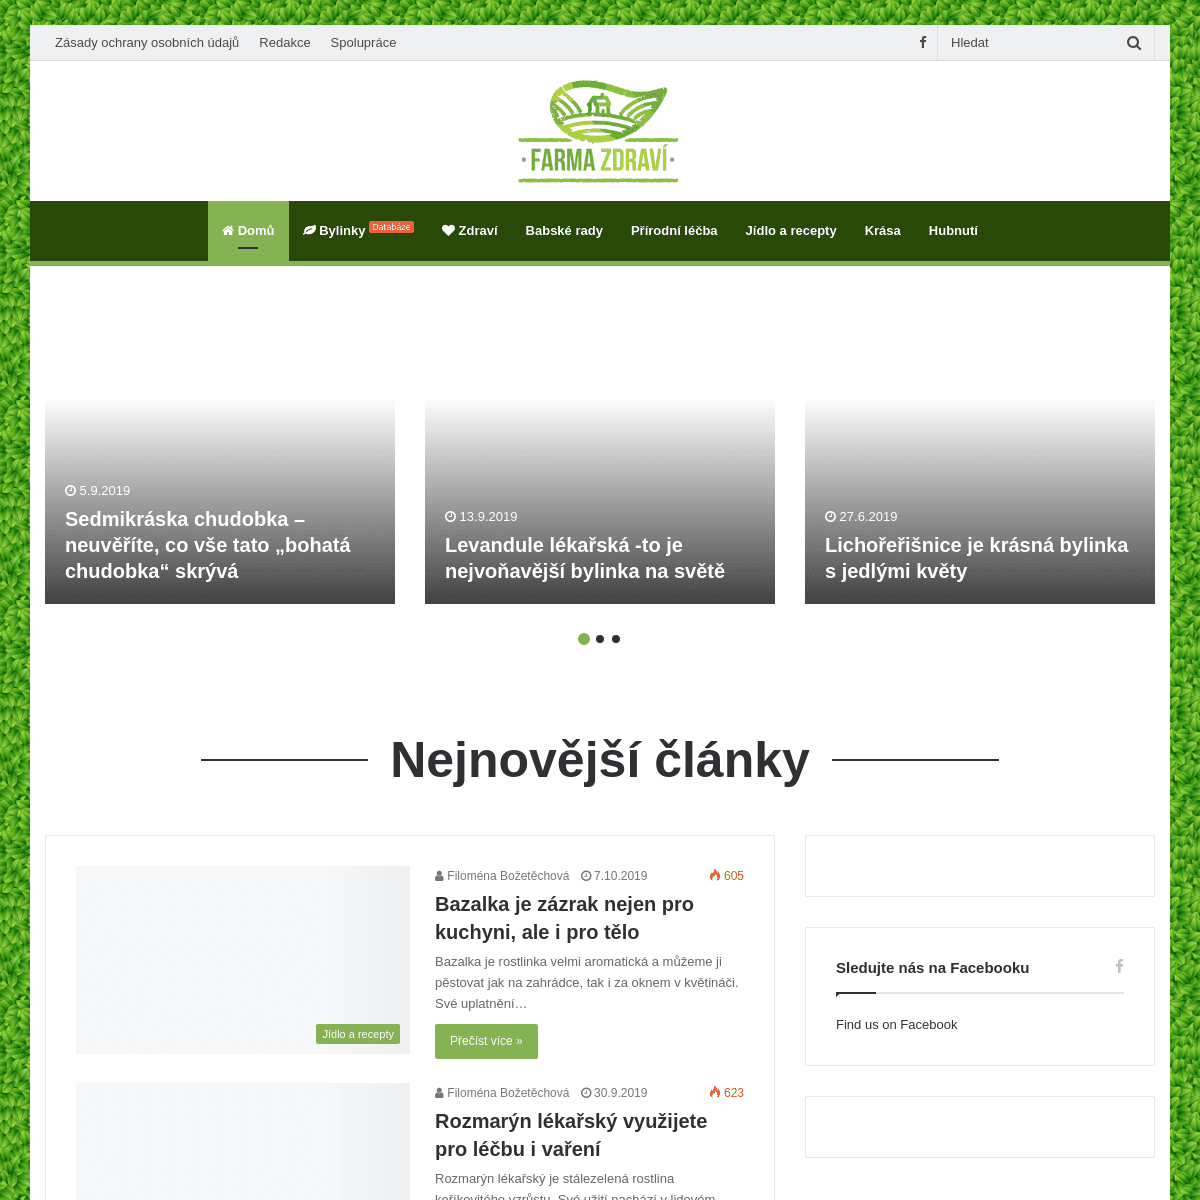 A complete backup of farmazdravi.cz